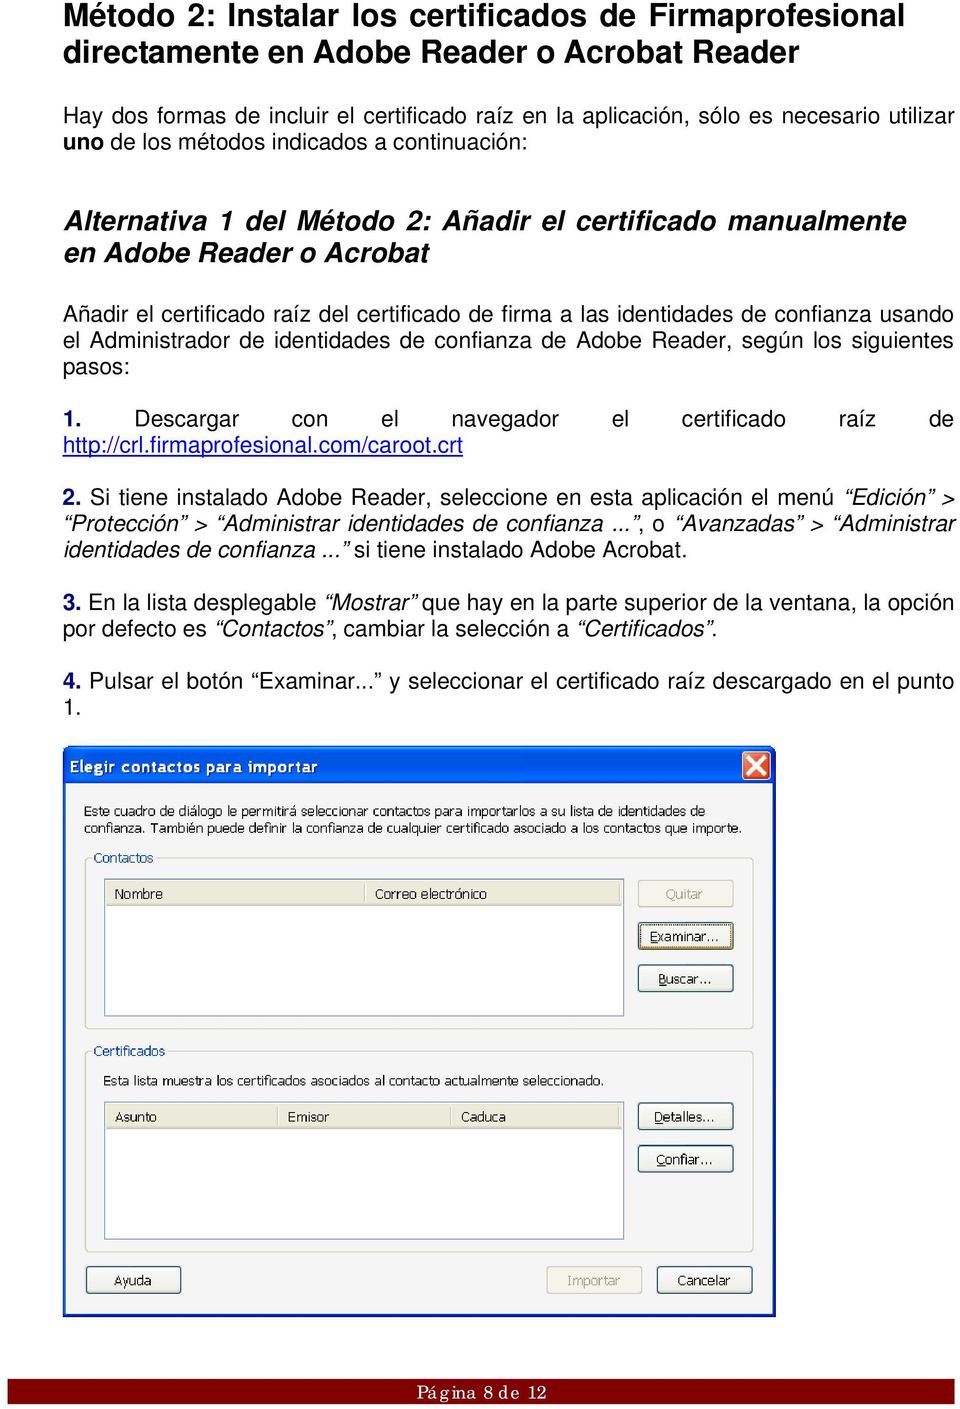 confianza usando el Administrador de identidades de confianza de Adobe Reader, según los siguientes pasos: 1. Descargar con el navegador el certificado raíz de http://crl.firmaprofesional.com/caroot.